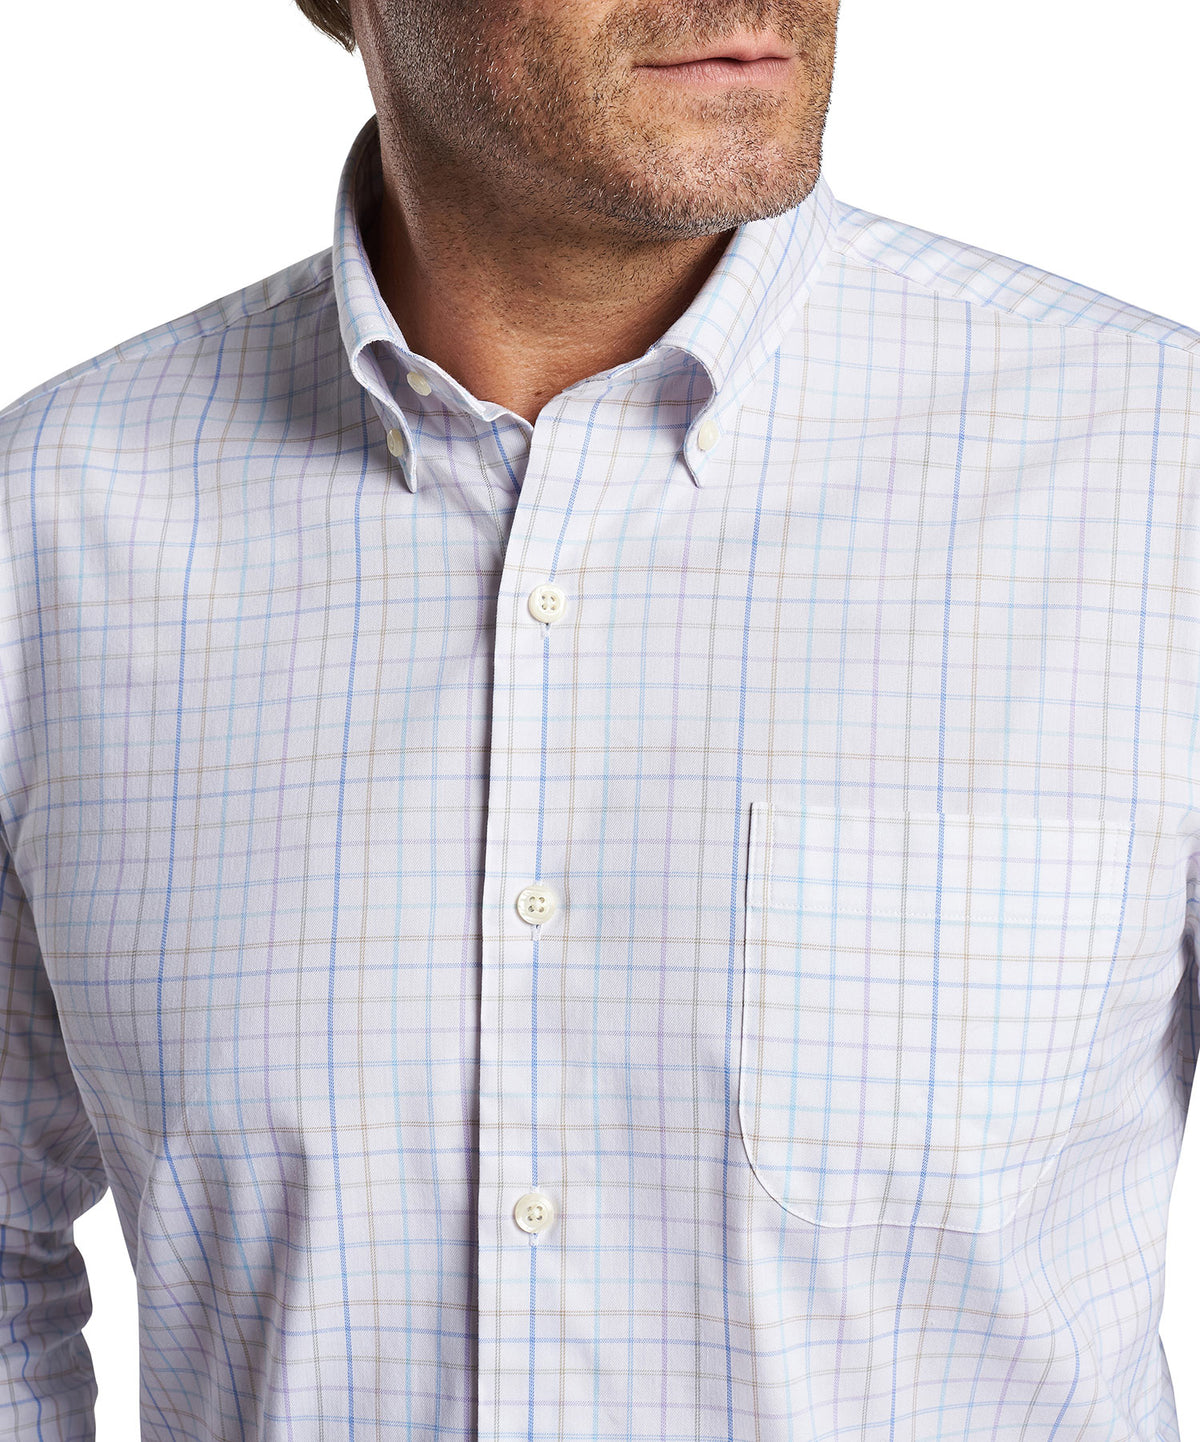 Peter Millar Long Sleeve Patton Button-Down Collar Patterned Sport Shirt, Big & Tall